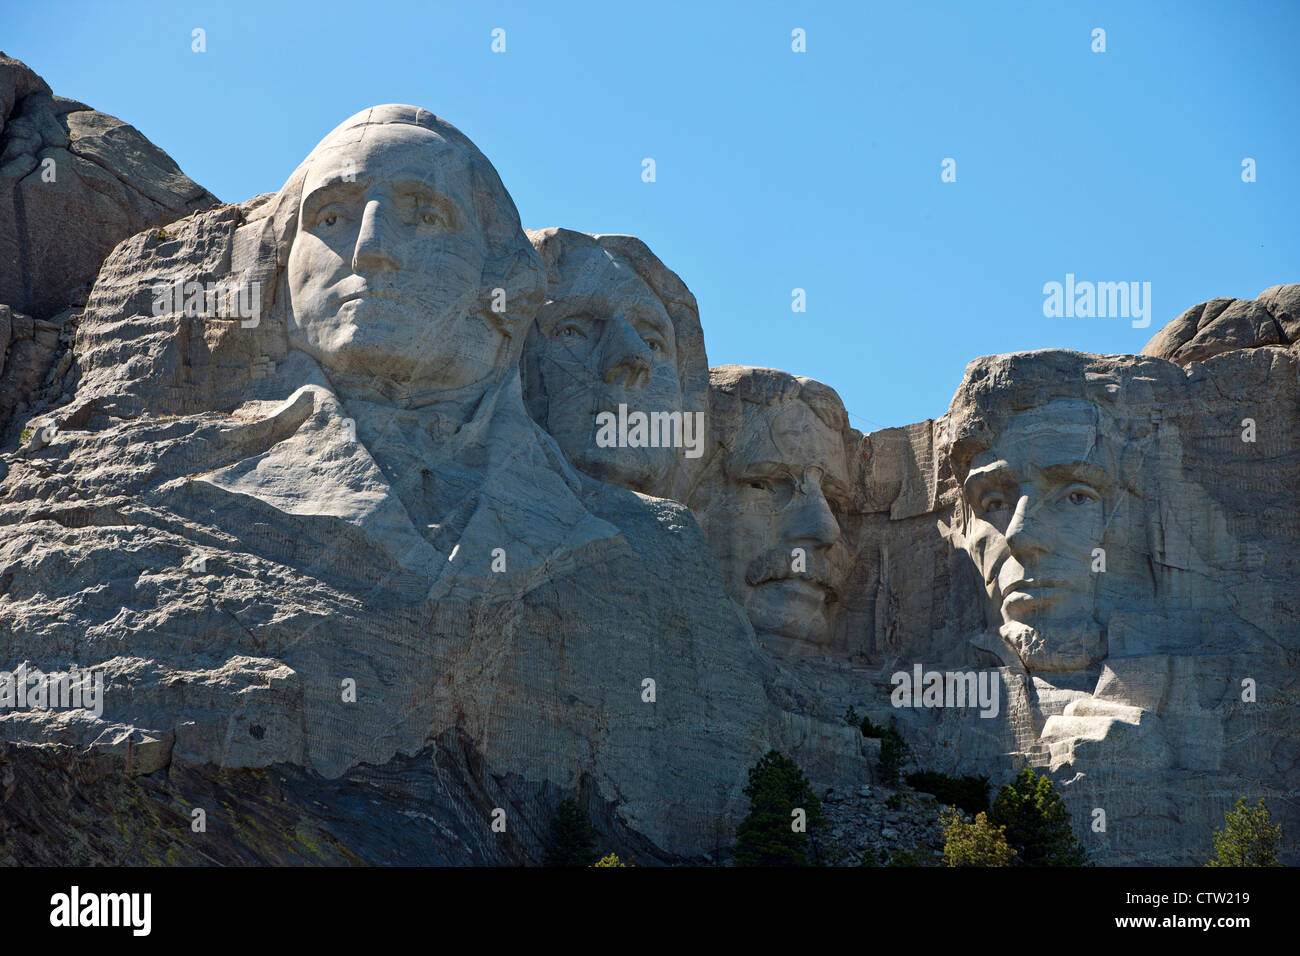 Detaillierte Ansicht Mt. Rushmore mit Skulpturen des ehemaligen Präsidenten George Washington, Thomas Jefferson, Theodore Roosevelt und Abraham Lincoln, Mount Rushmore National Monument, South Dakota, Vereinigte Staaten von Amerika Stockfoto